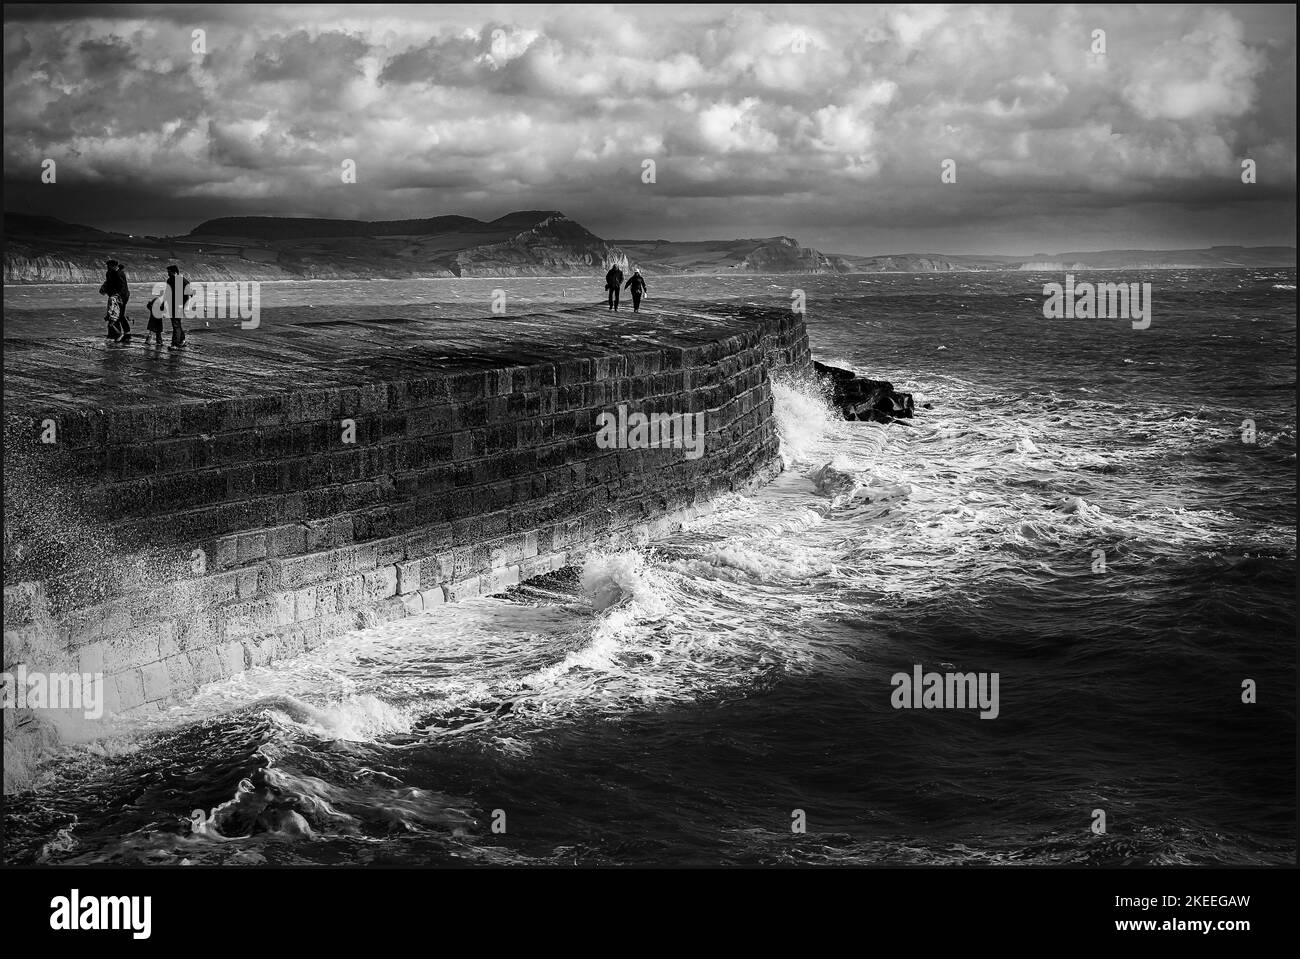 L'épi, Lyme Regis, pris en vacances en 2013 comme un orage a explosé. Banque D'Images